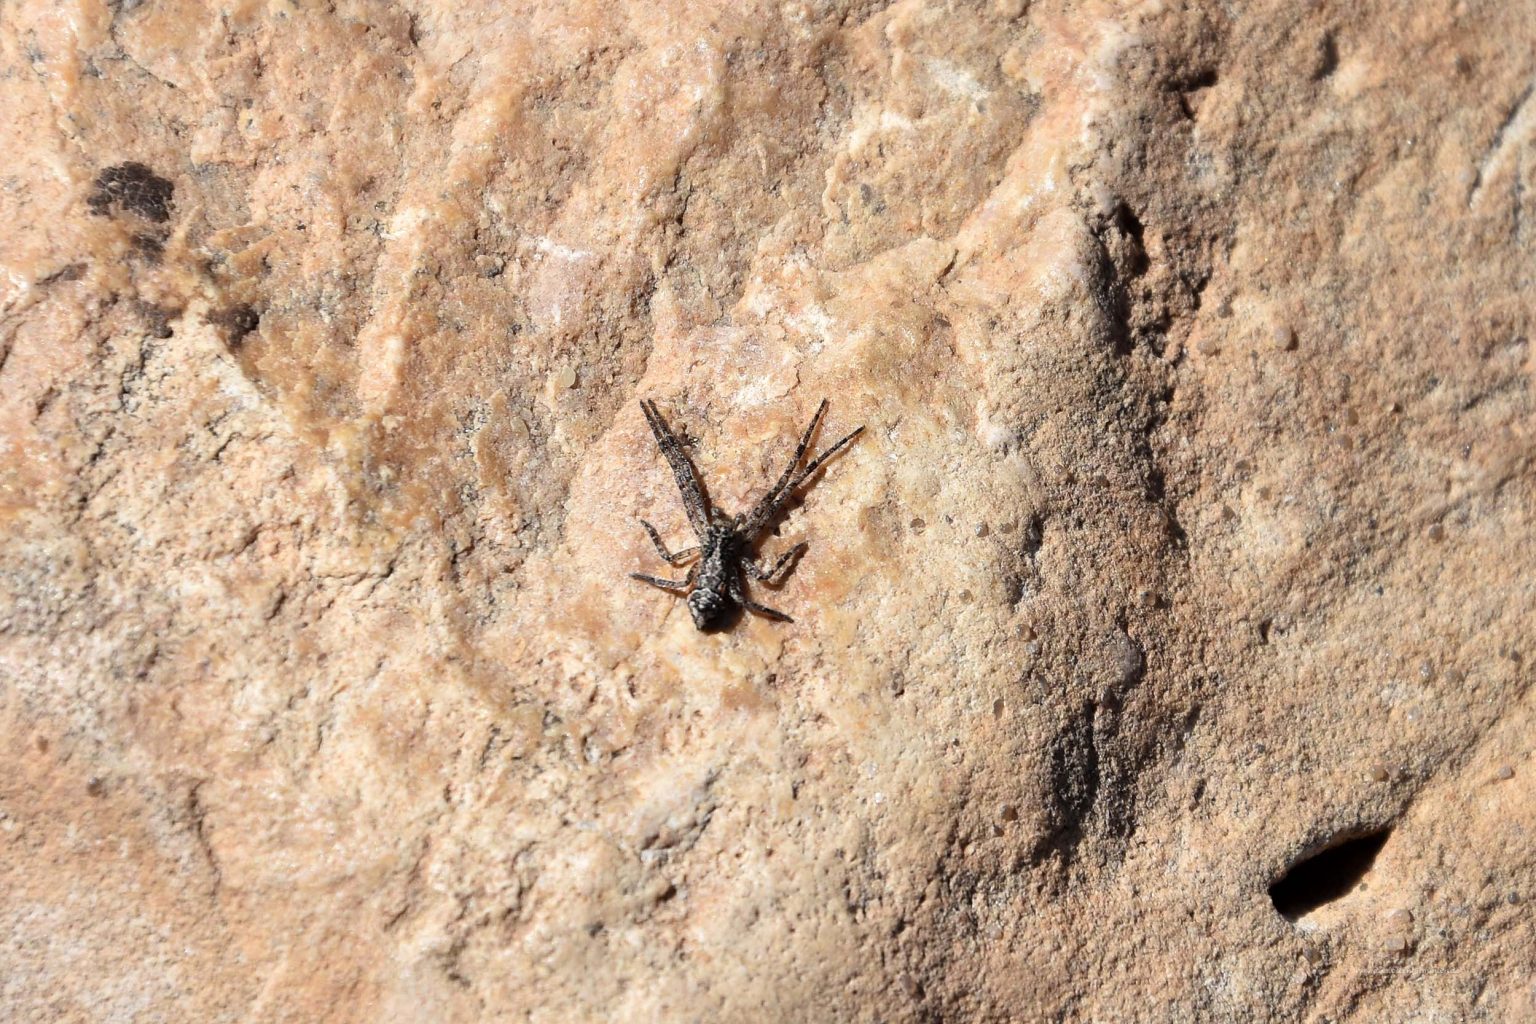 Krabbenspinne auf einem Felsen